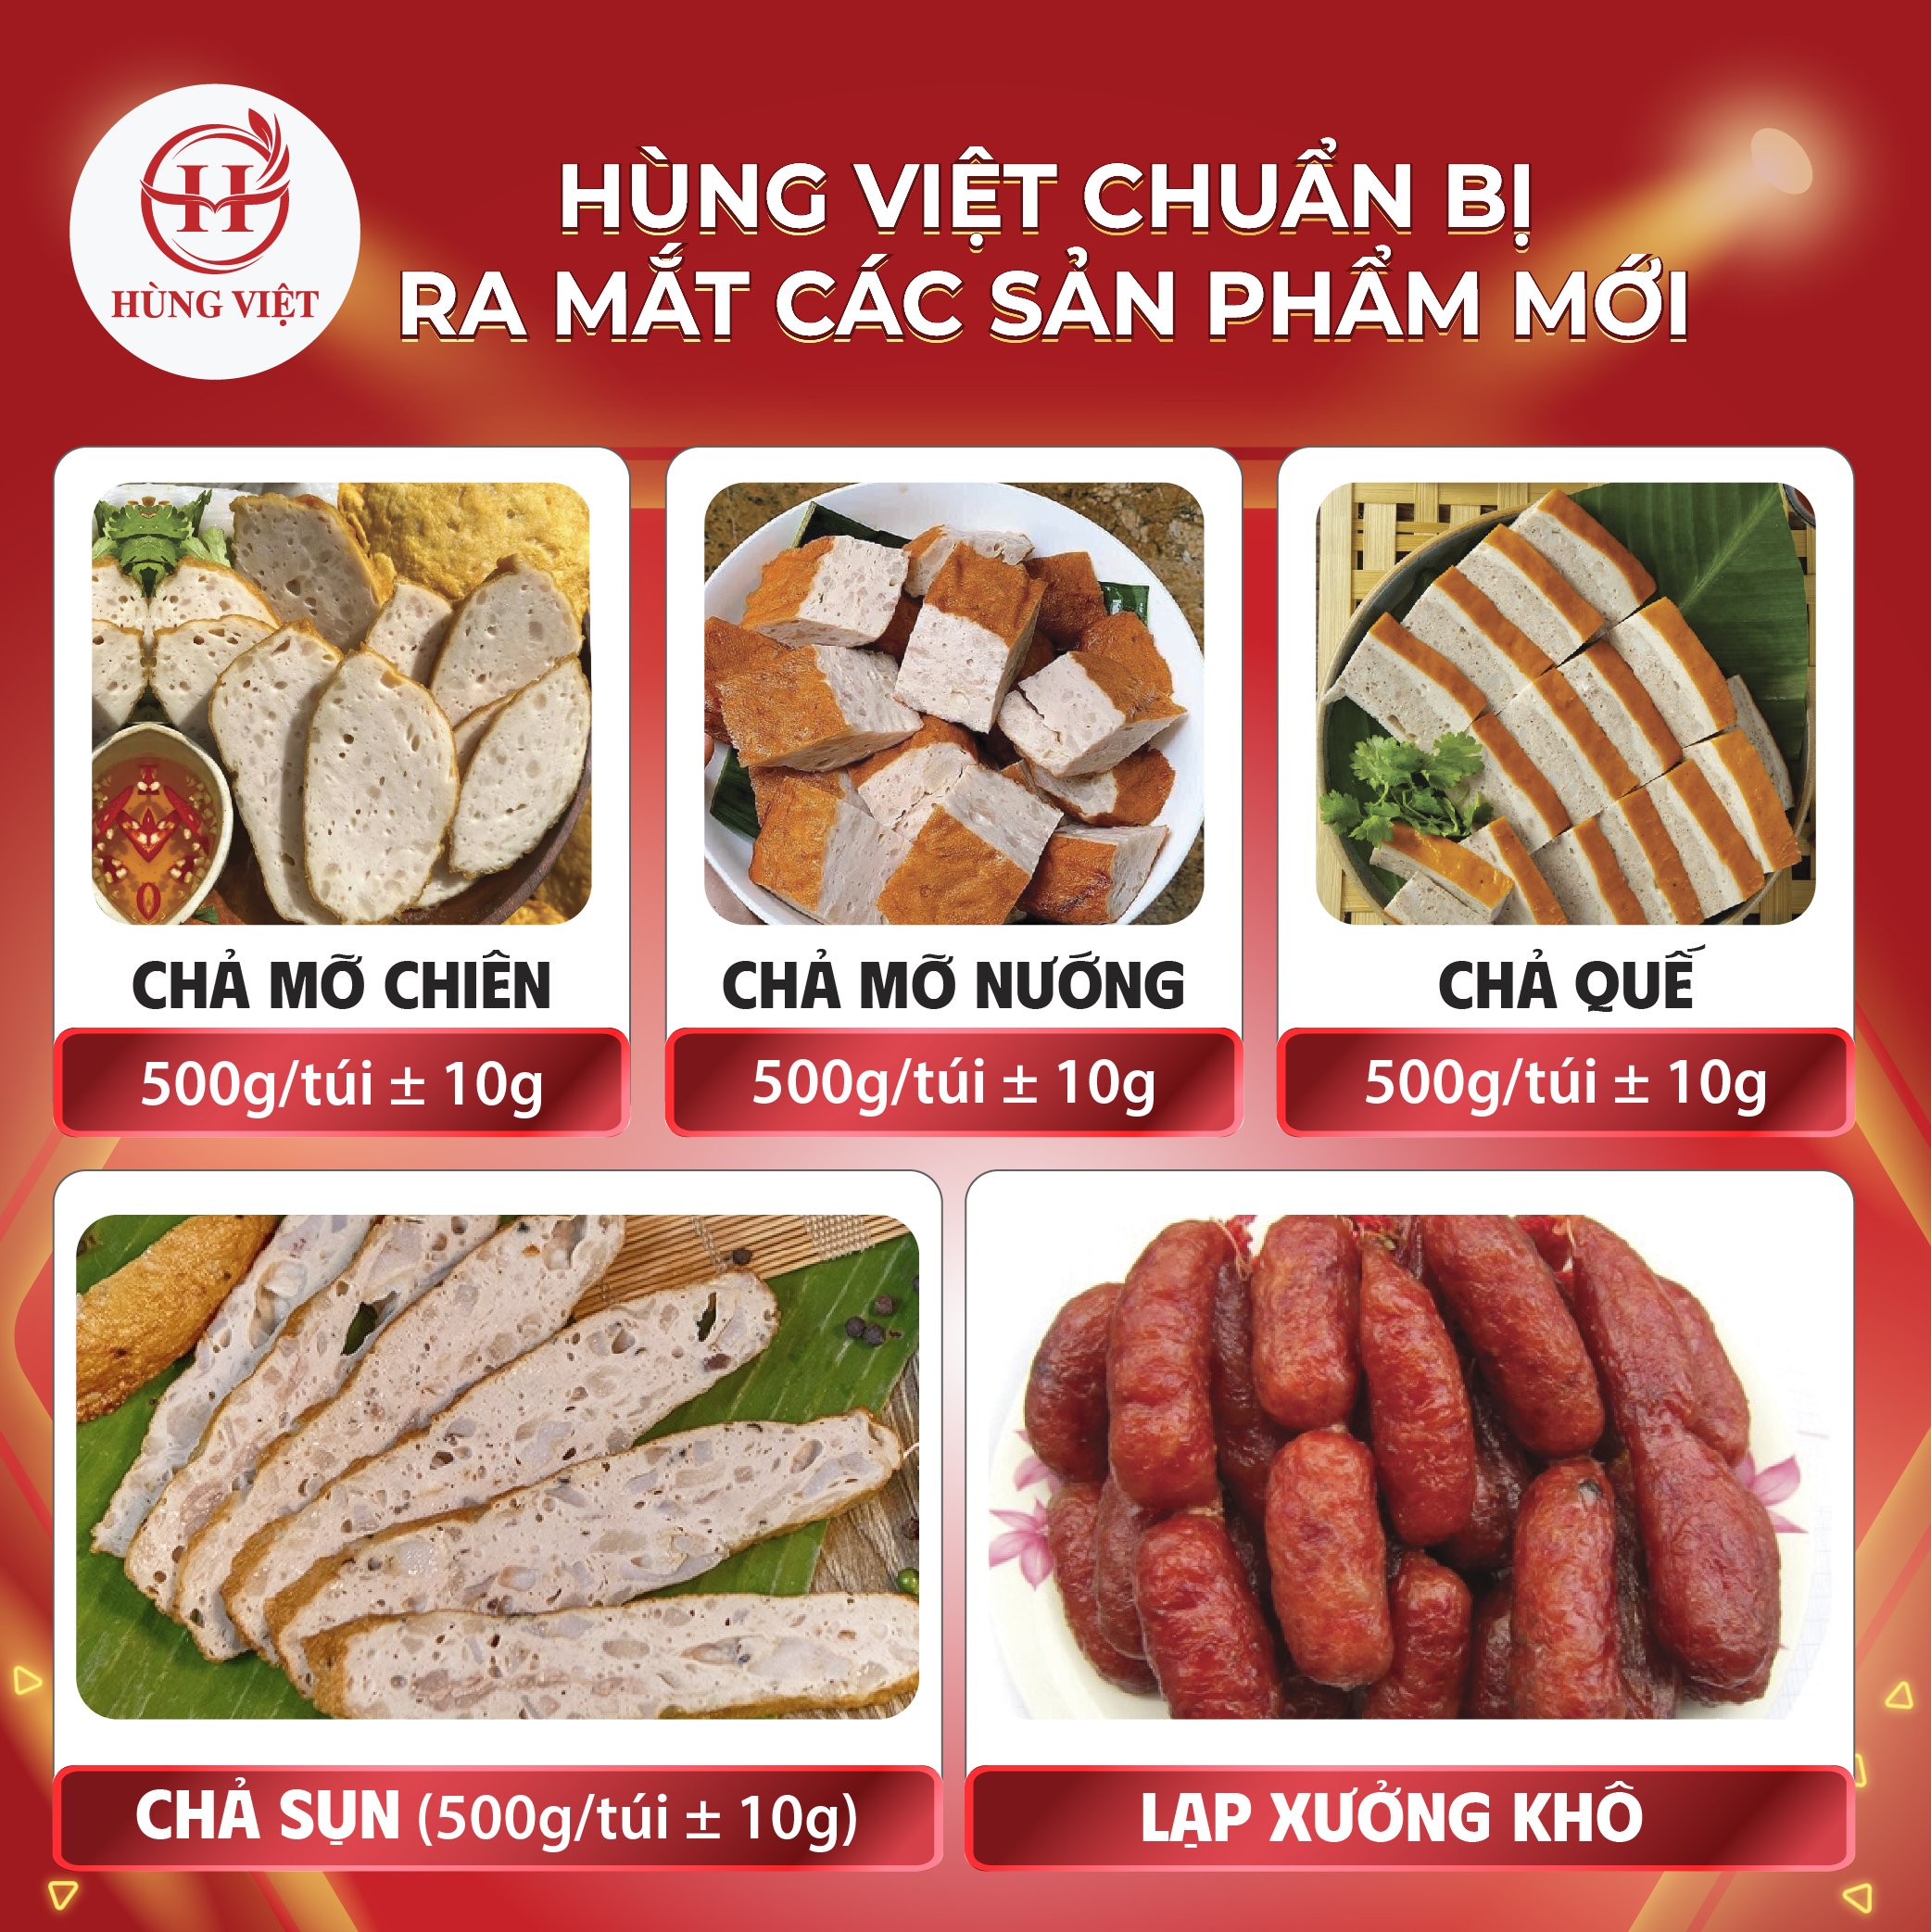 Hé lộ những dòng sản phẩm mới sắp ra mắt của Hùng Việt Food